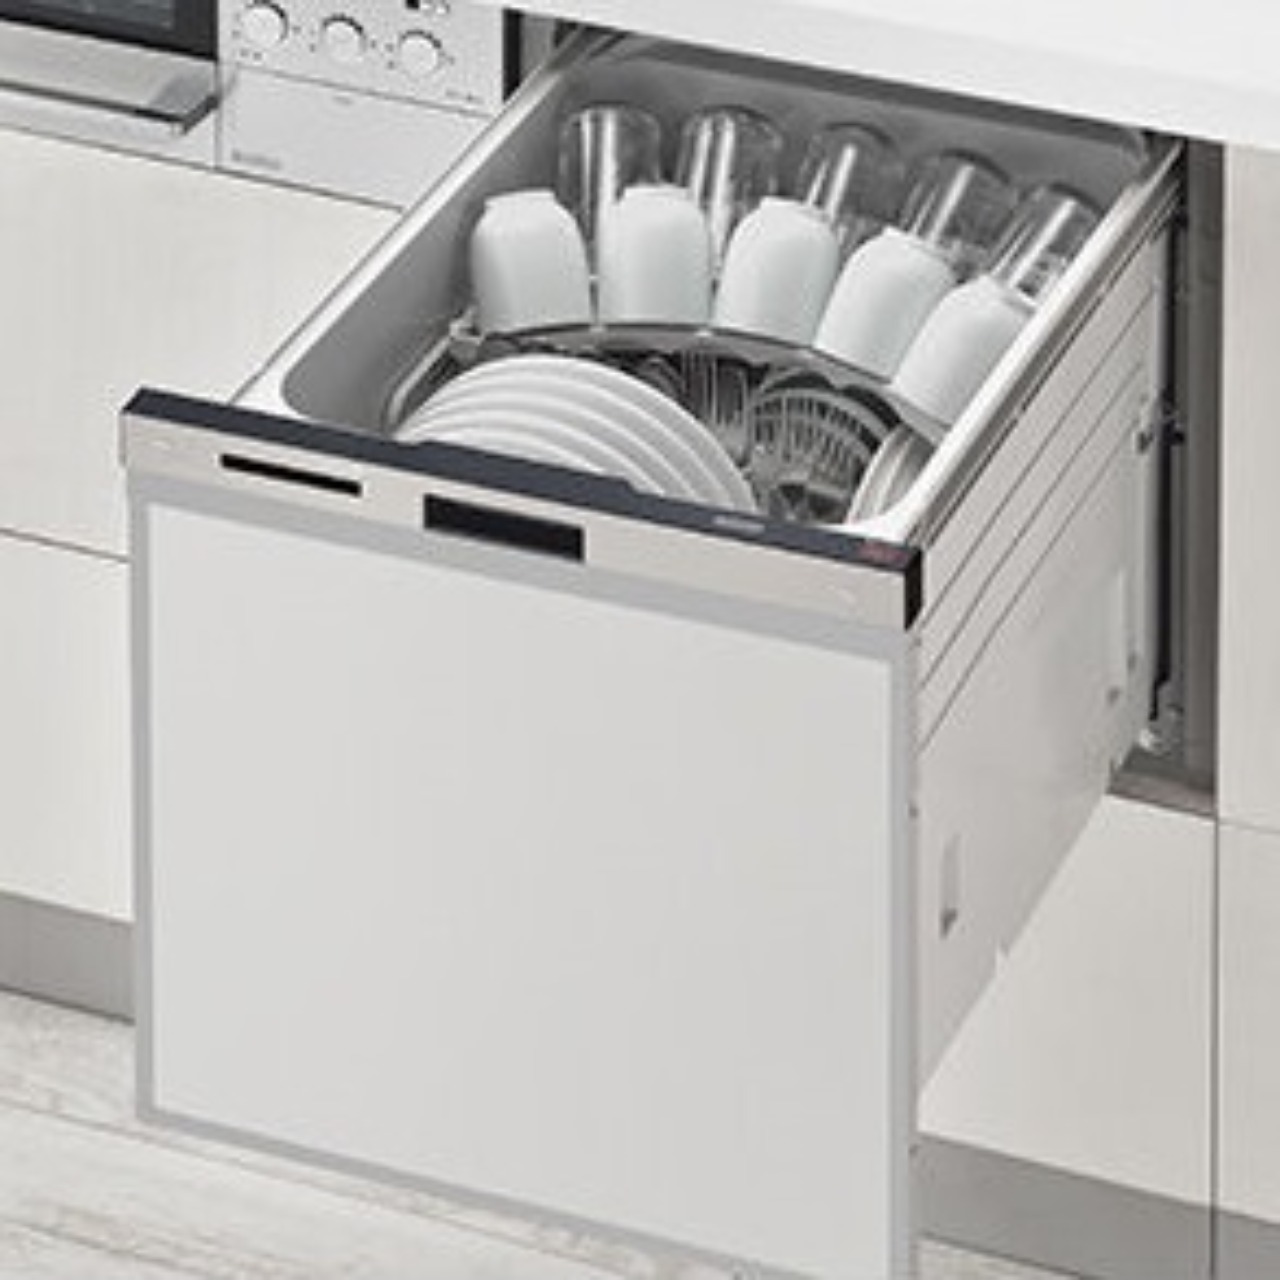 リンナイRSW-404Aビルトイン食器洗い乾燥機